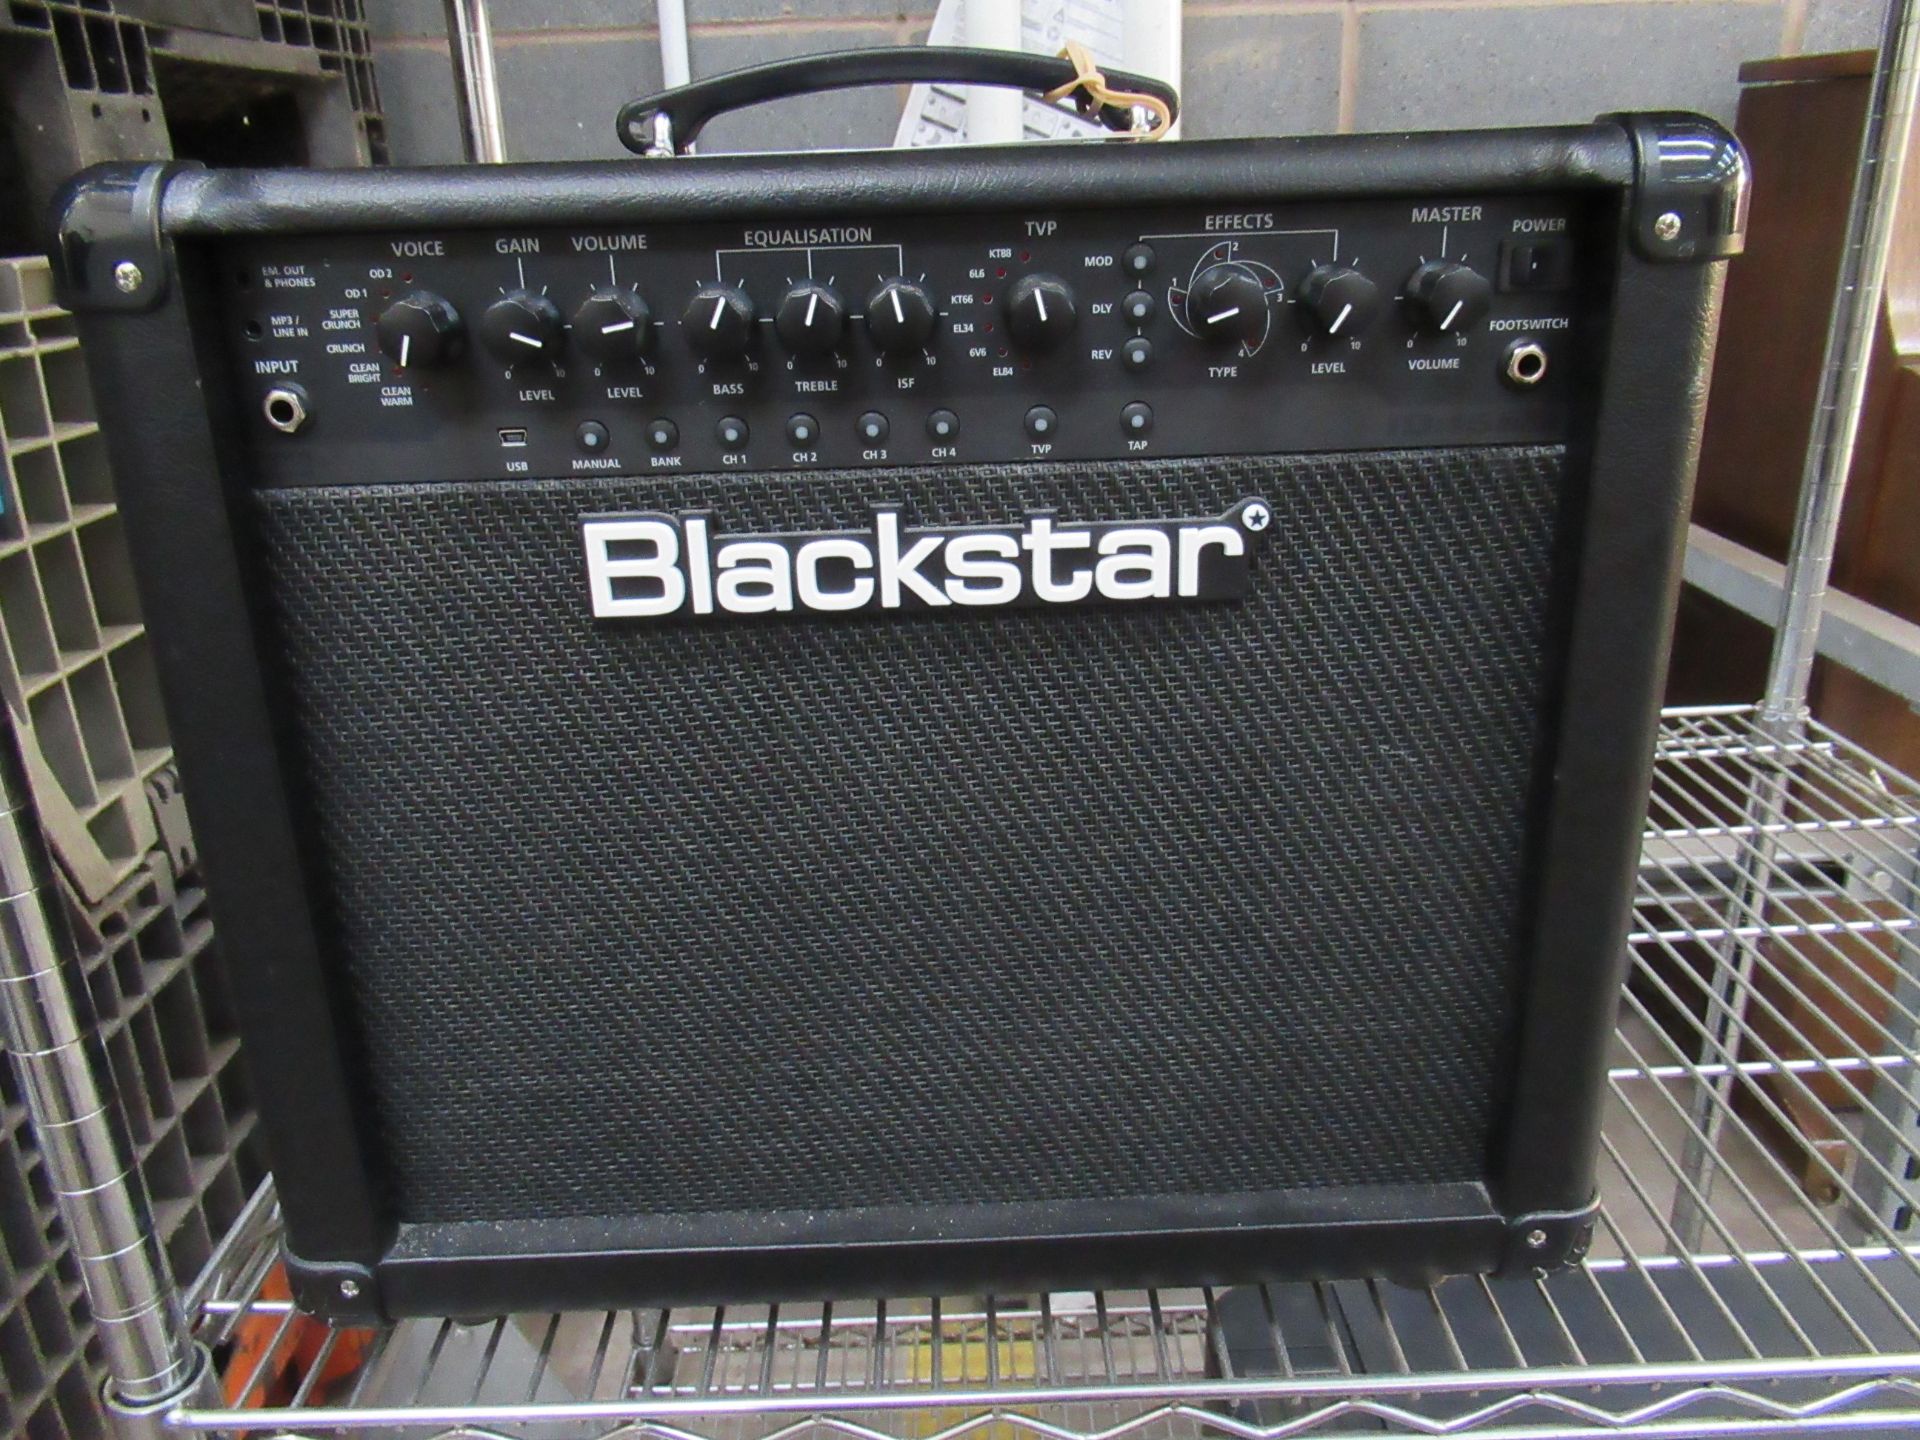 Blackstar 15TVP amplifier